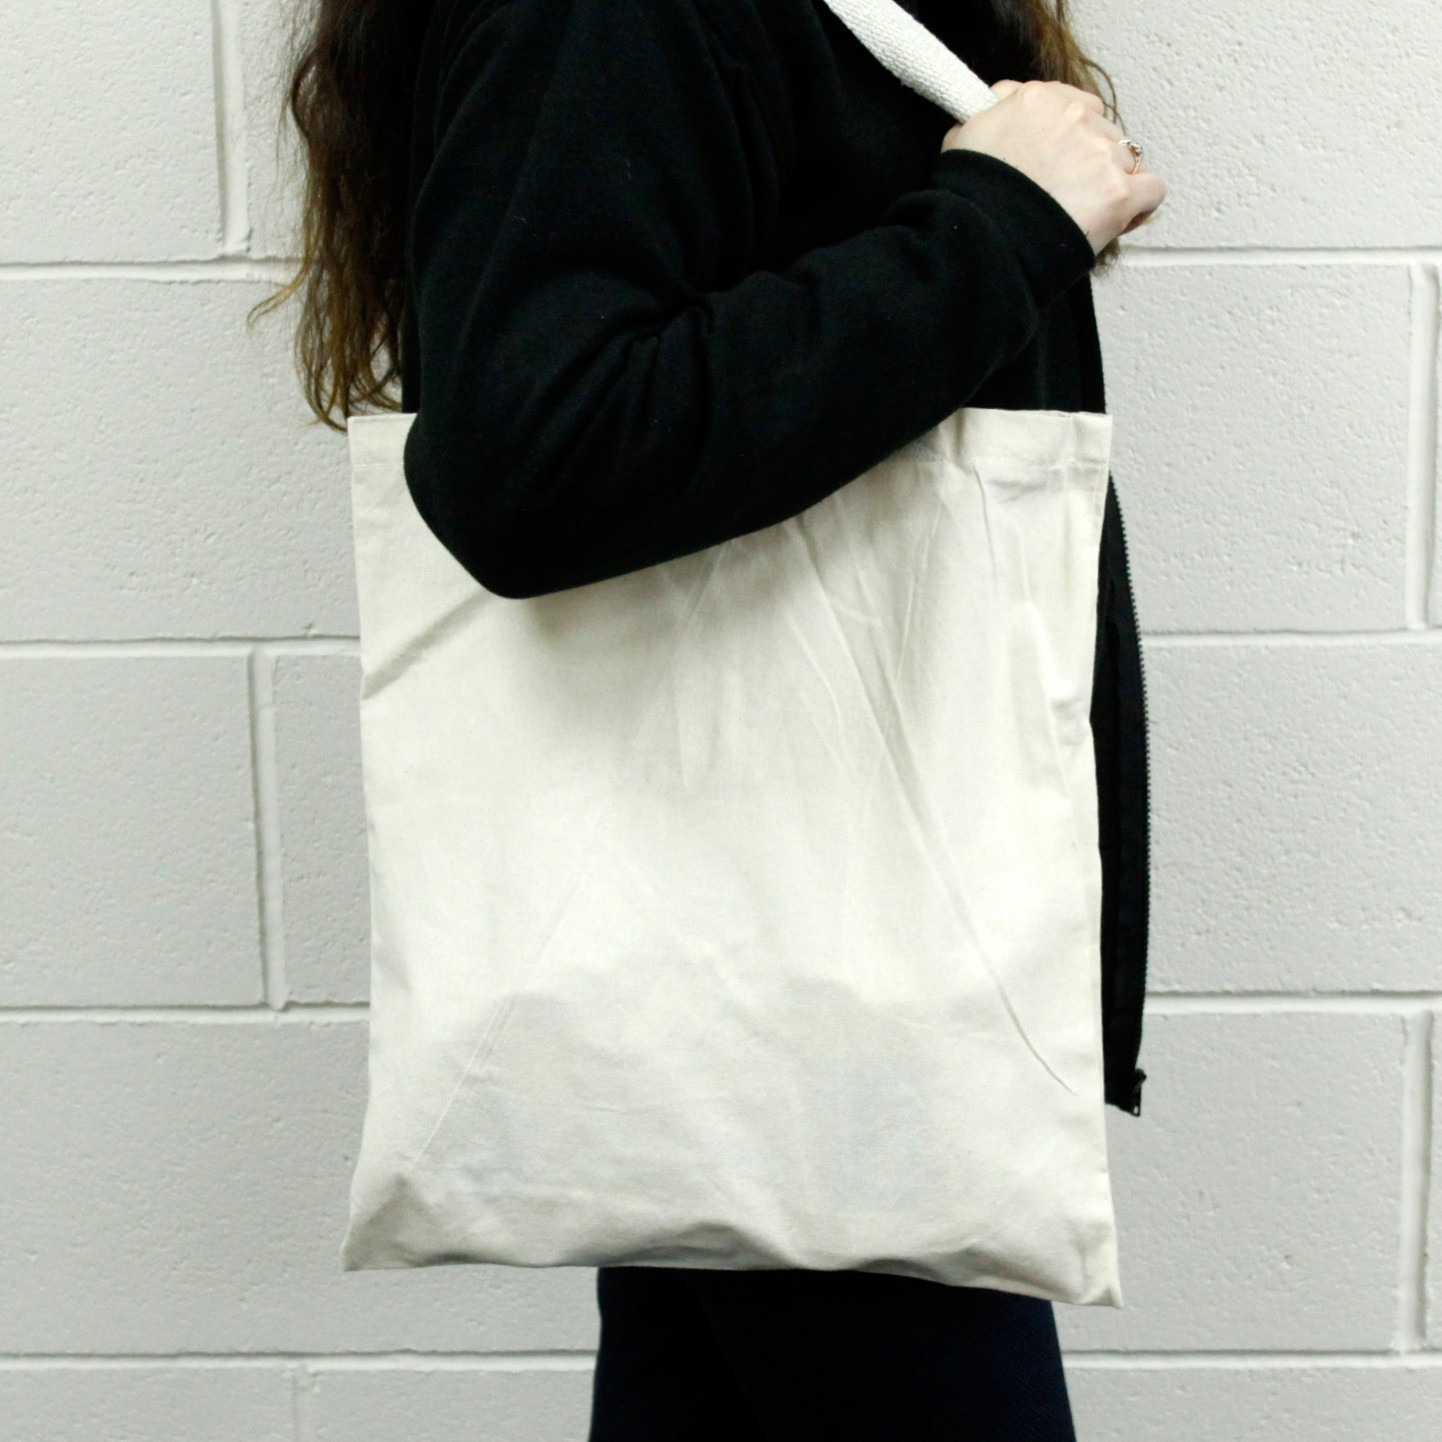 Bavlněné tašky - Přírodní barva - 200gsm - Velké 38x42 cm